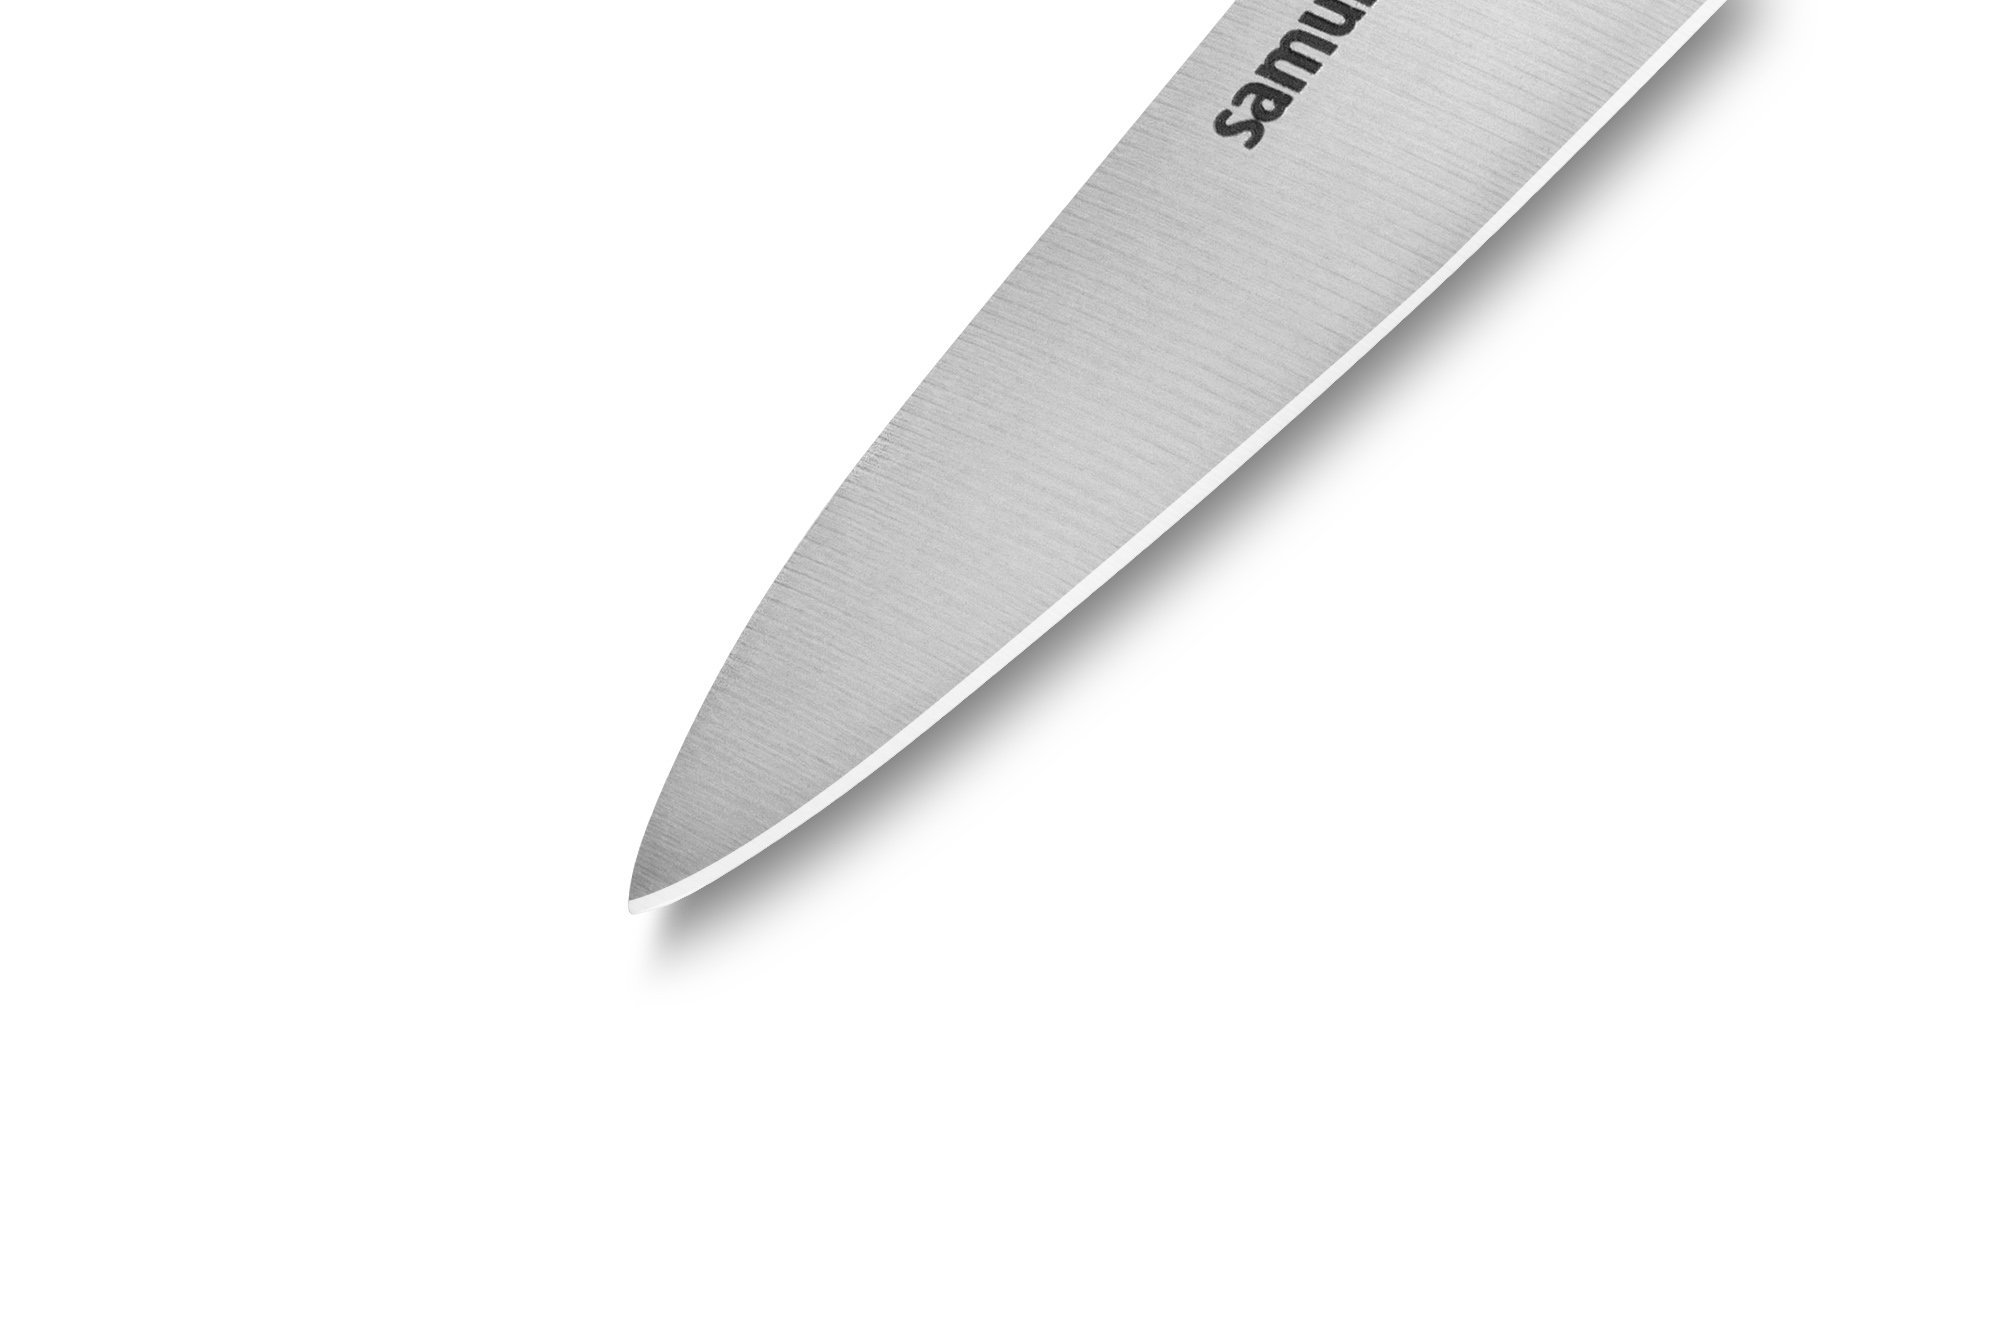 Нож кухонный Samura PRO-S овощной - SP-0010, сталь AUS-8, рукоять G10, 88 мм - фото 7